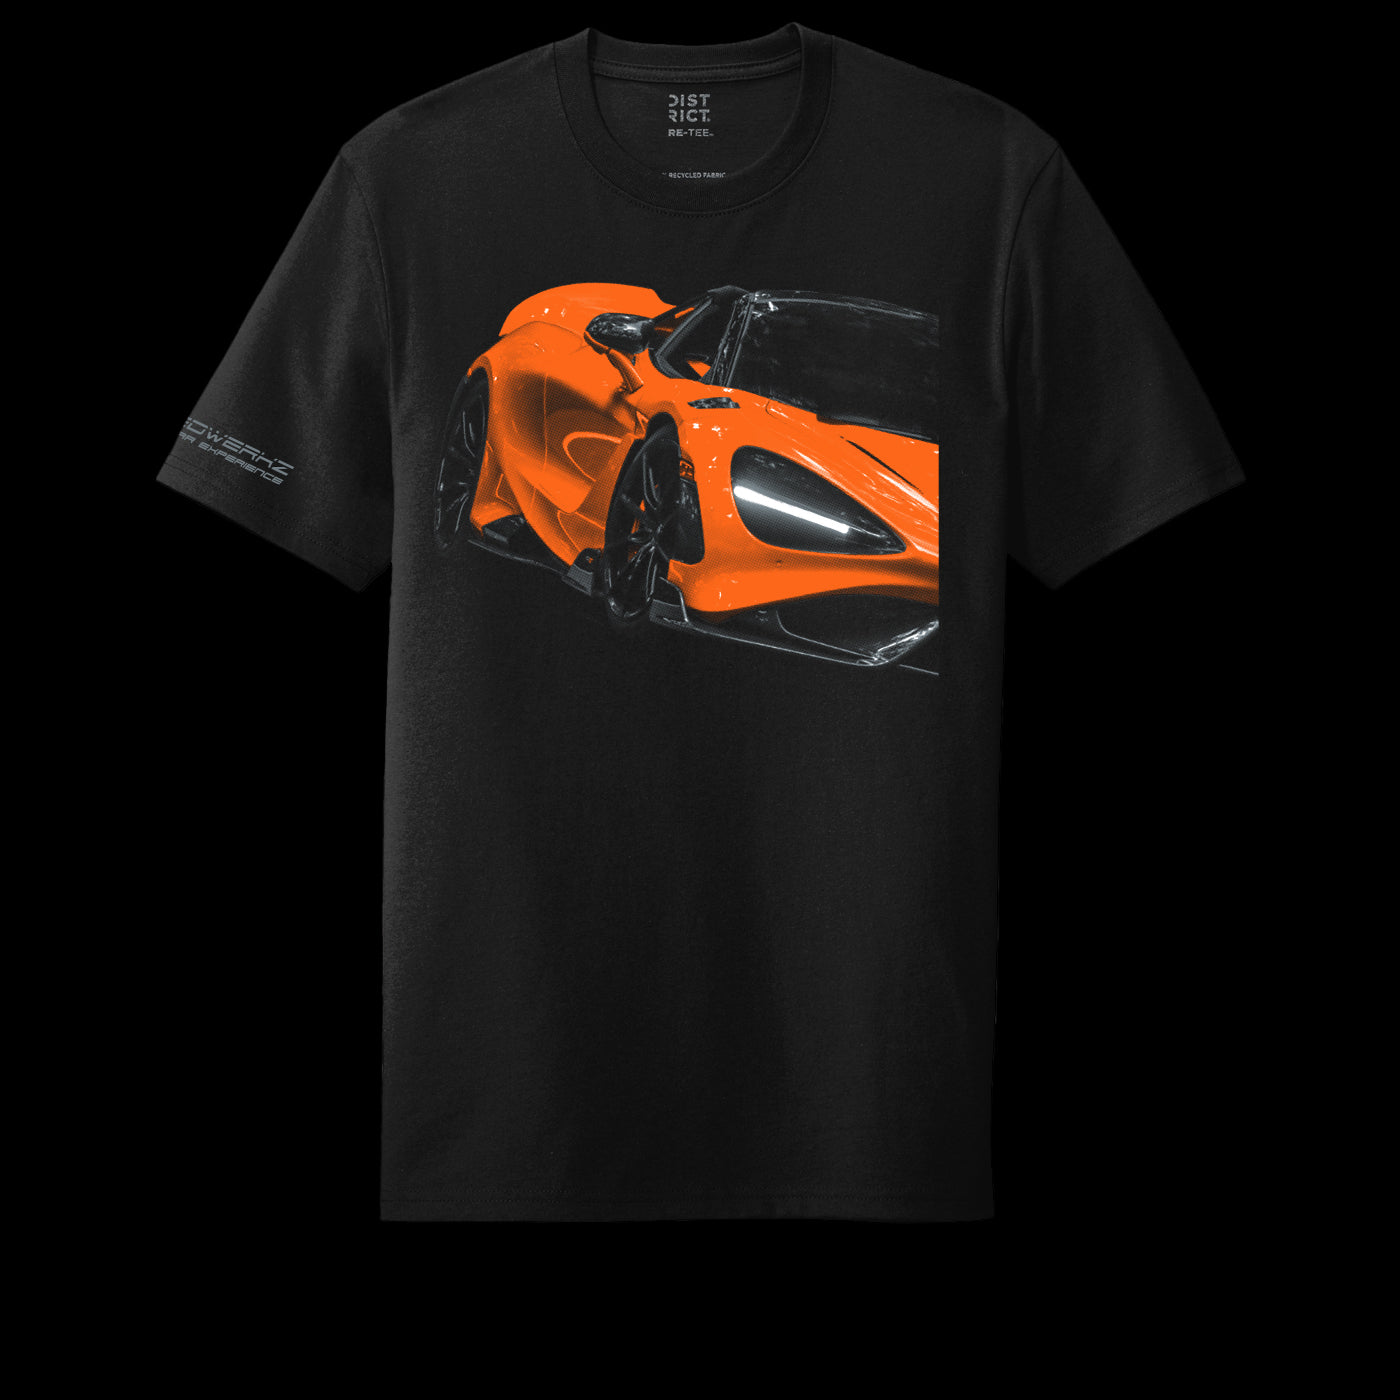 Speedwerkz T-Shirt with an orange McLaren on it